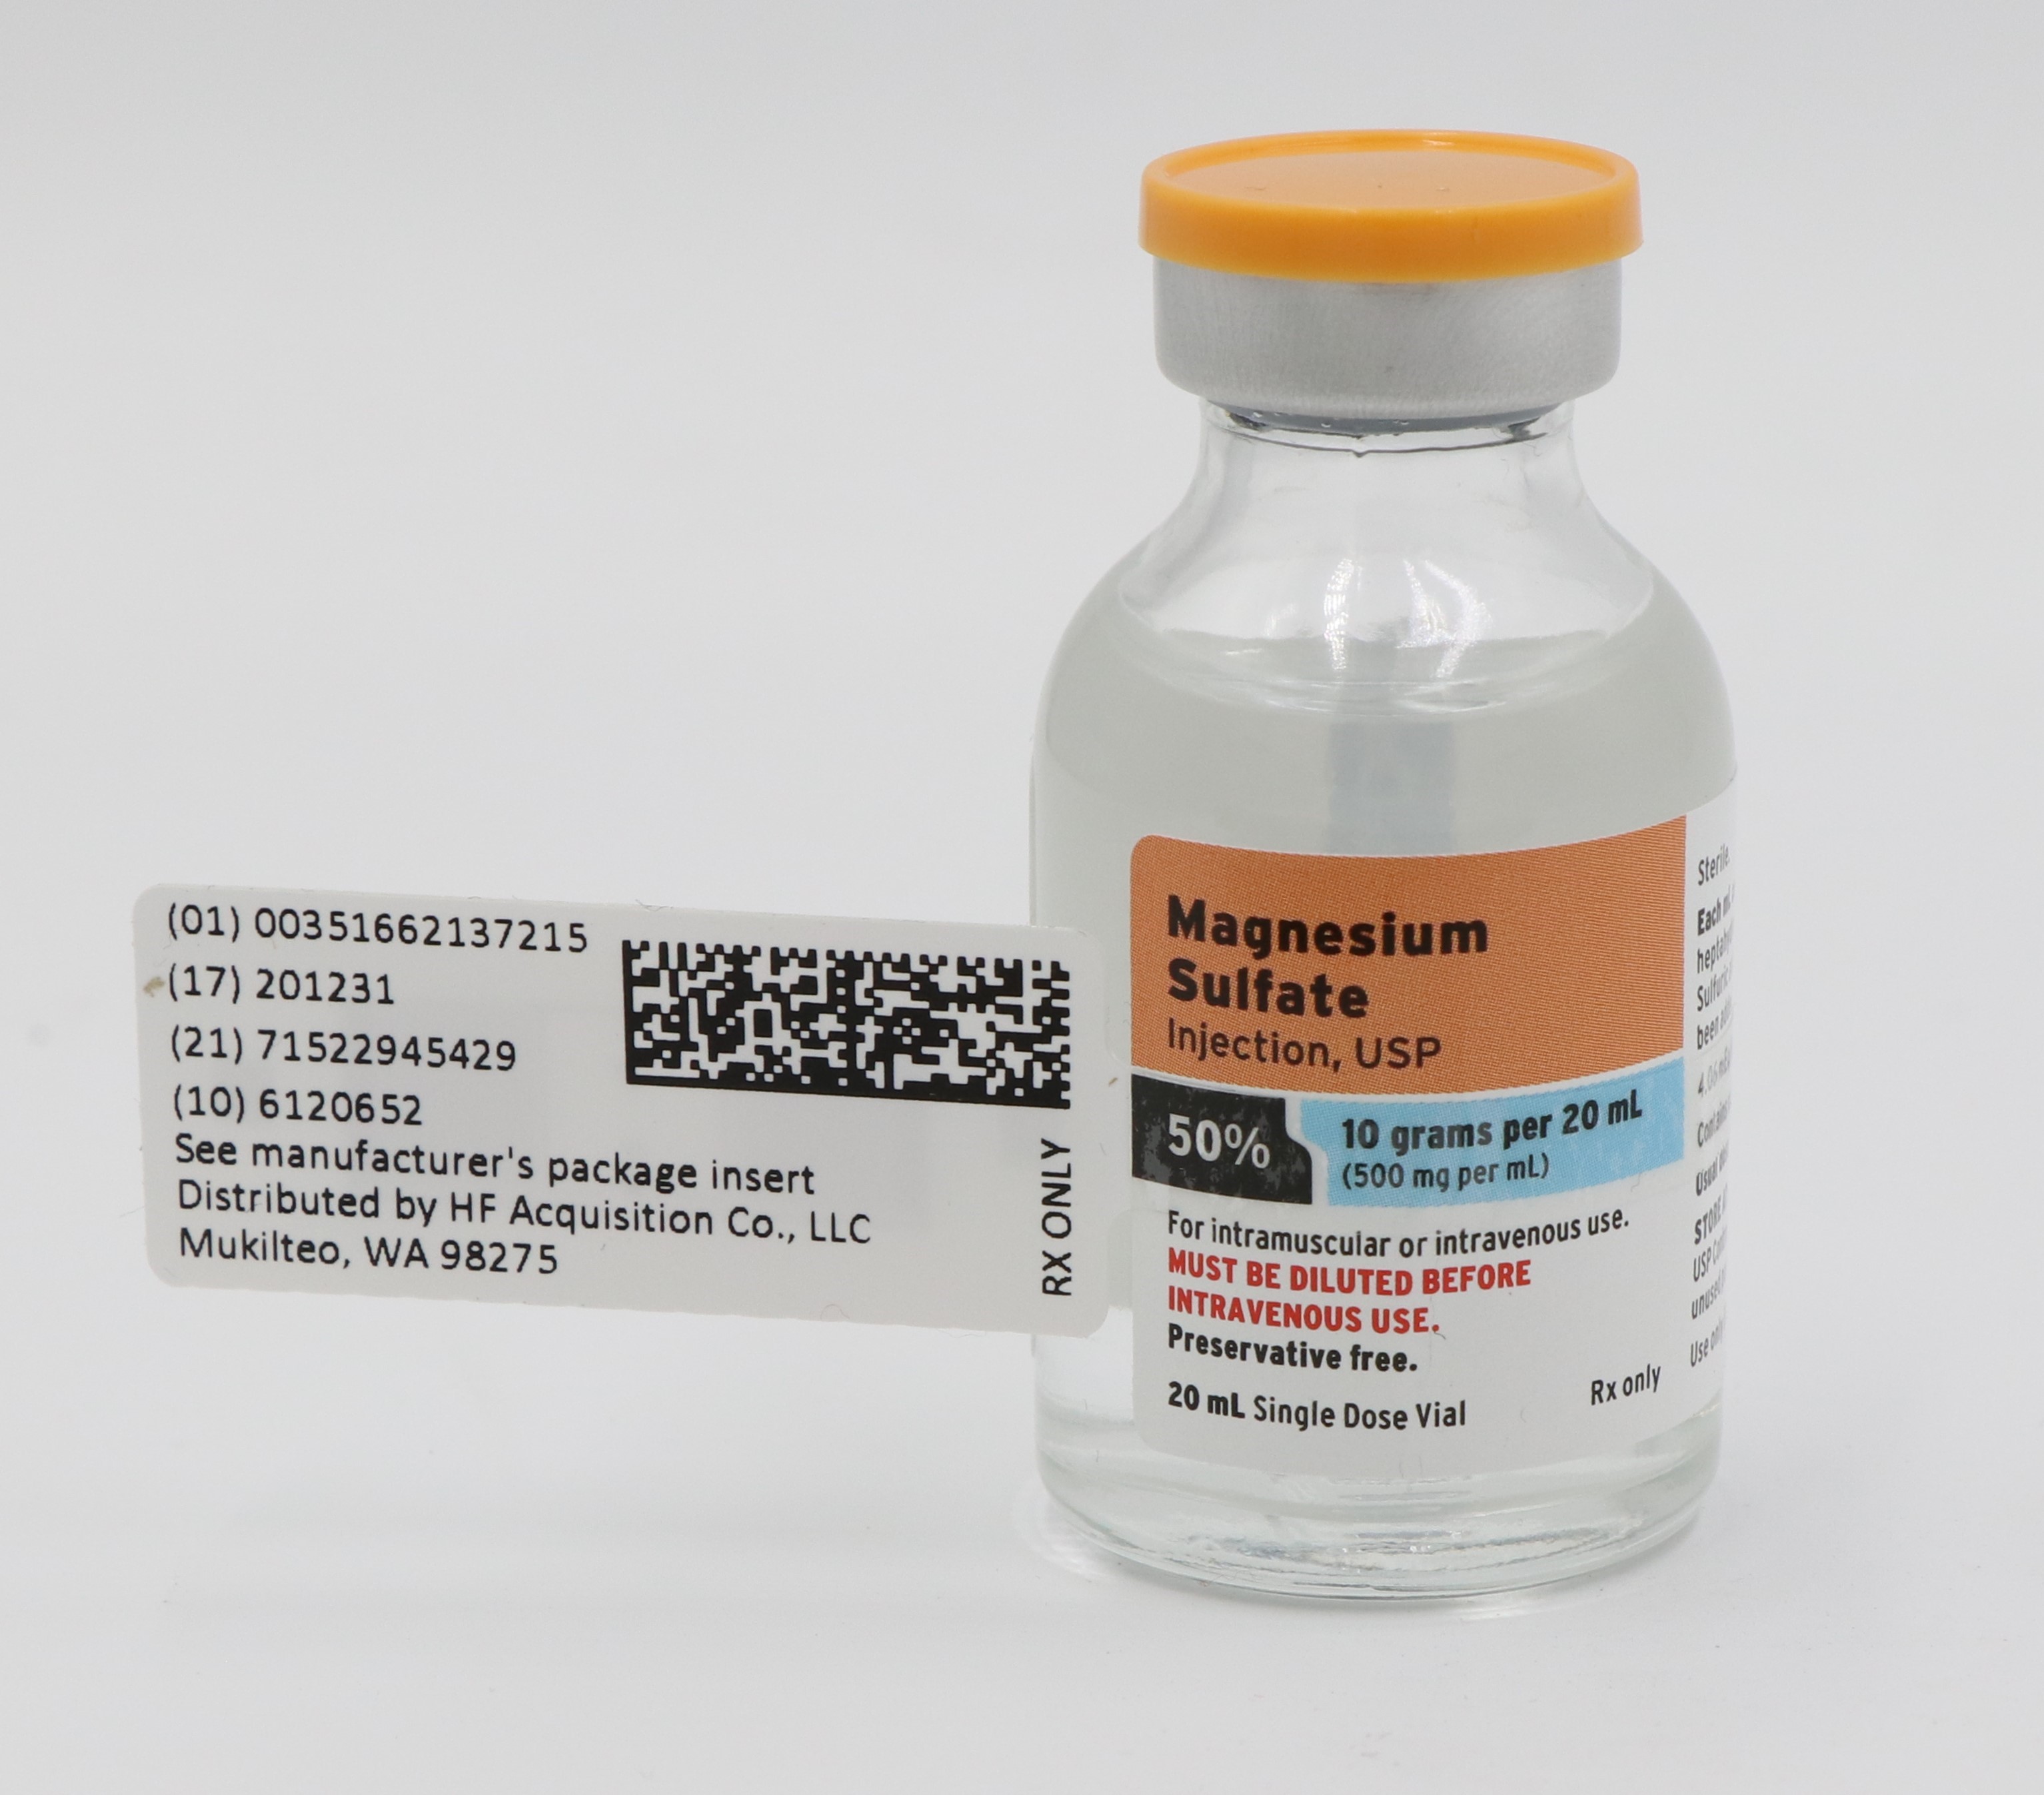 Accueil: Sulfate de magnesium 500mg/ml, 20ml